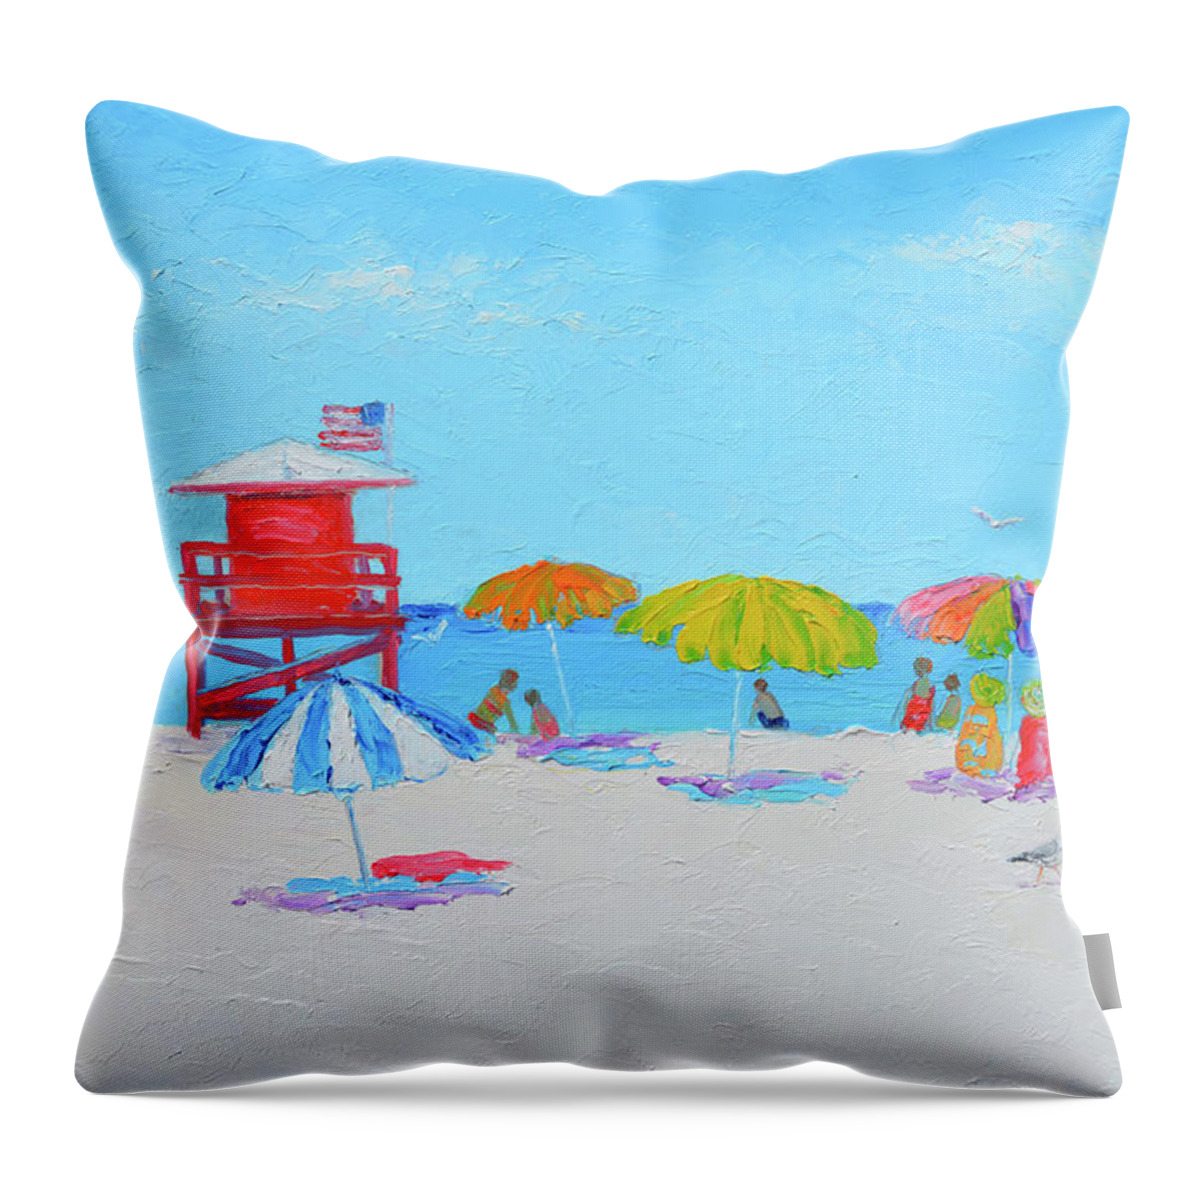 Siesta Beach Throw Pillow featuring the painting Siesta Beach Florida, beach impression by Jan Matson